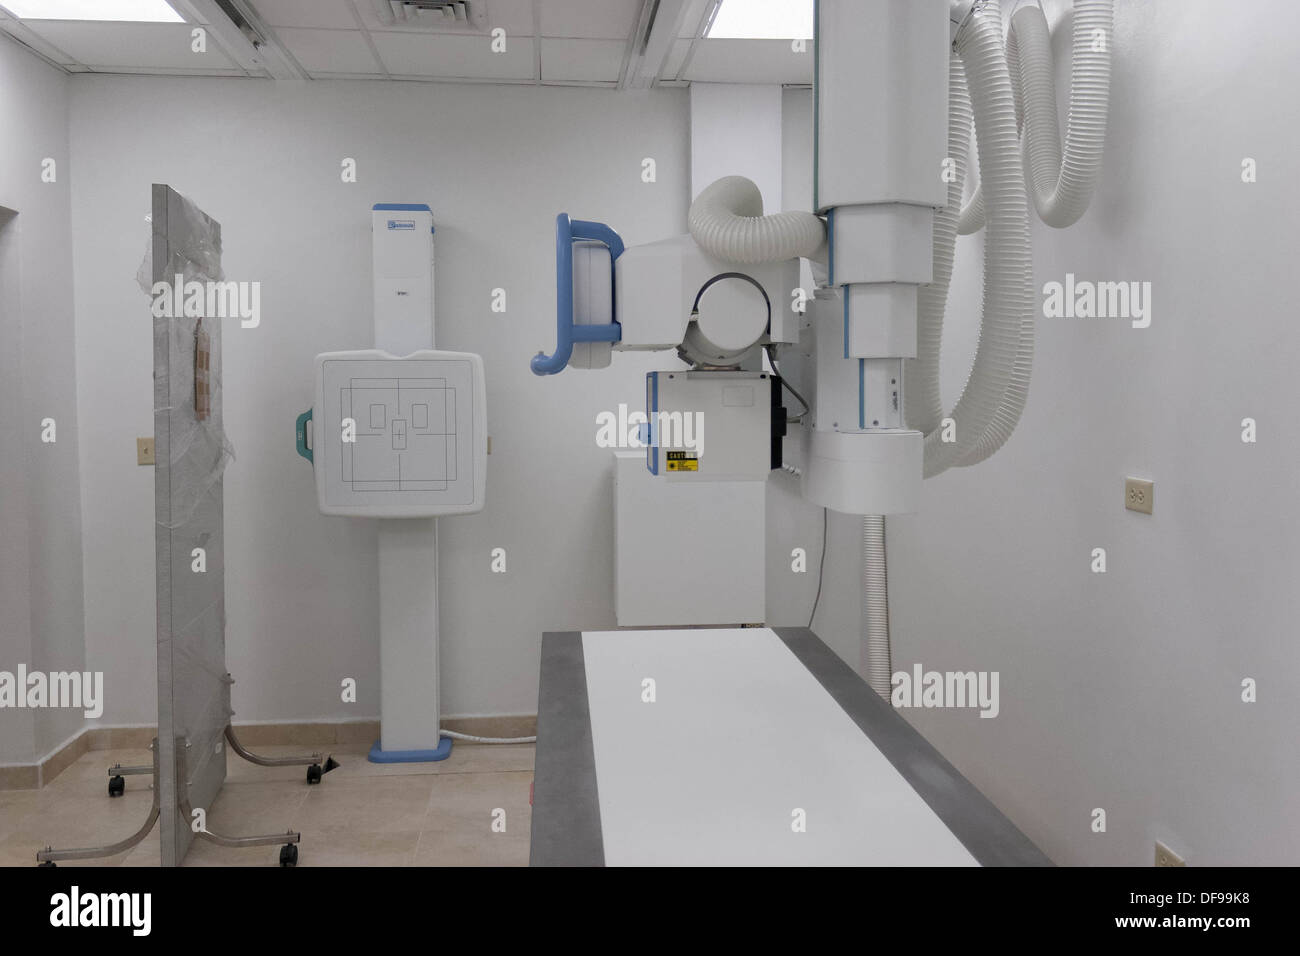 brand new X ray machine. Stock Photo